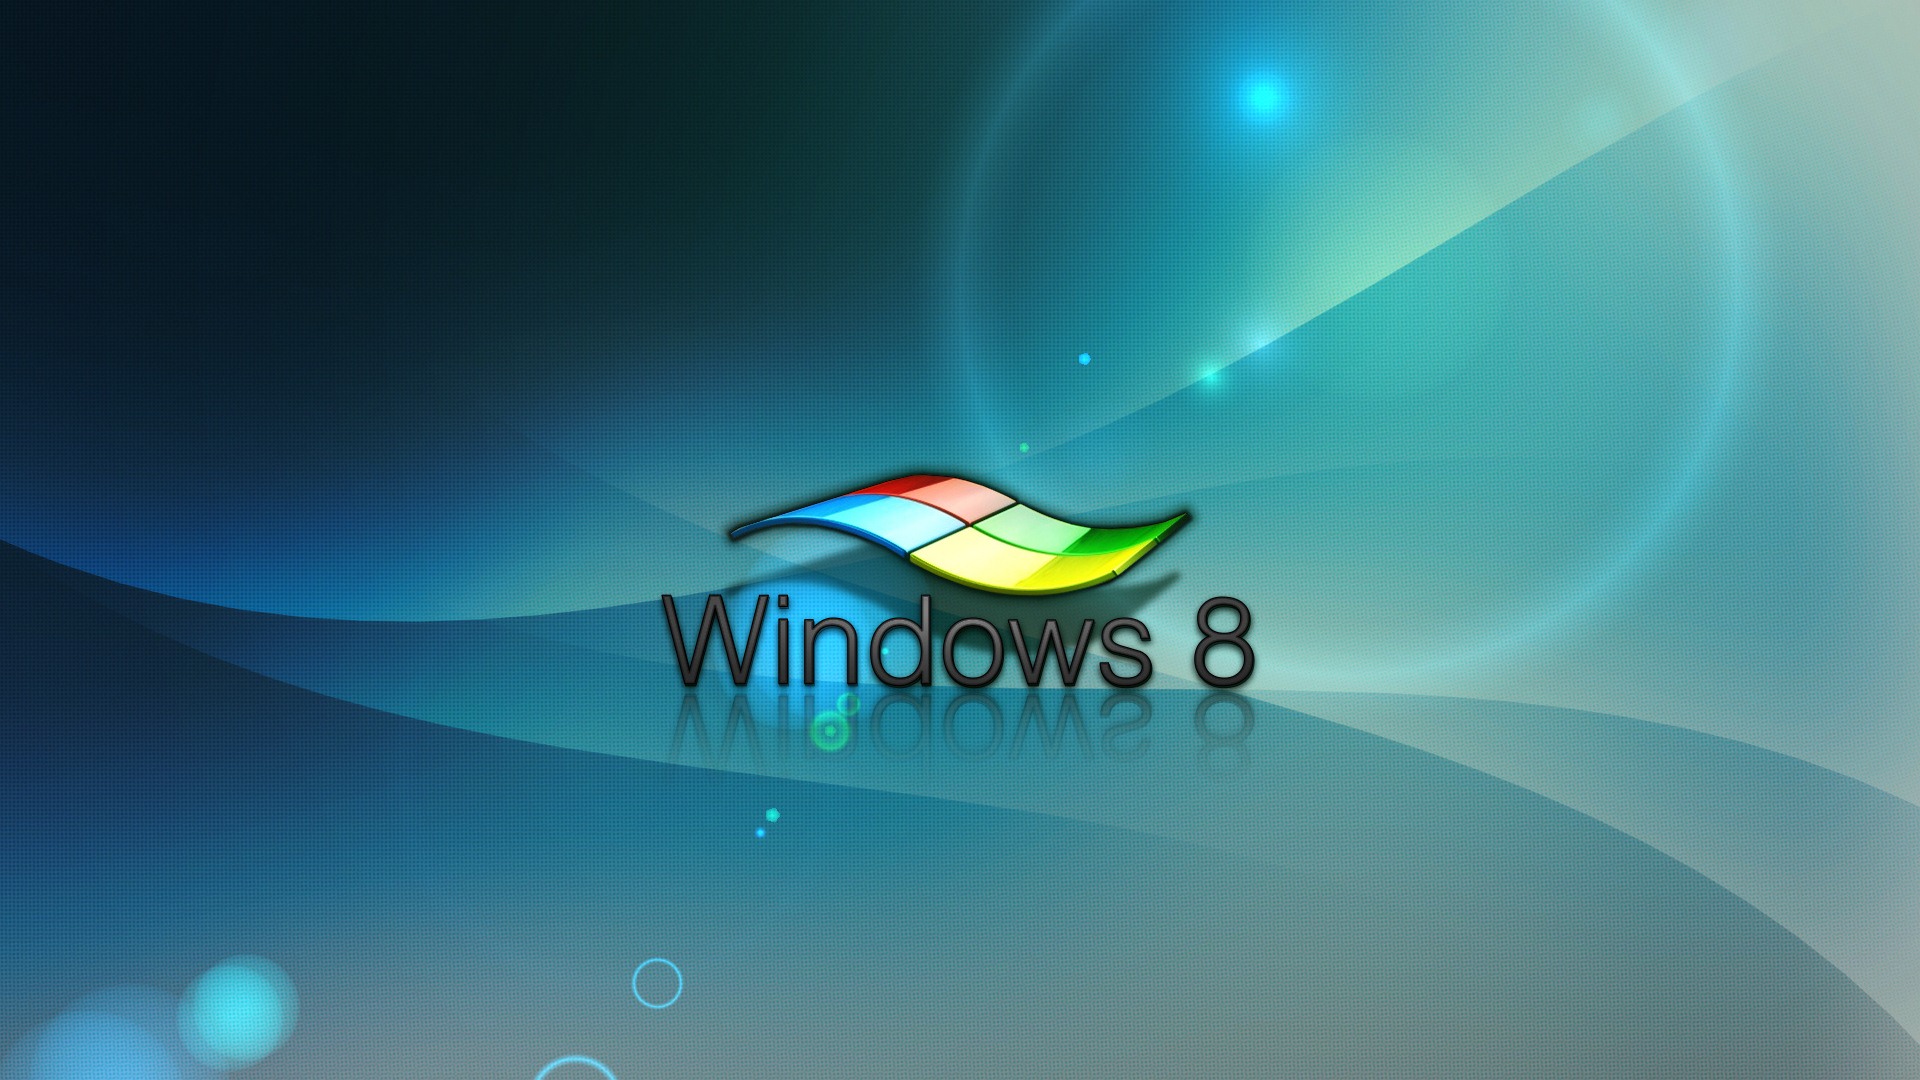 Windows 8 Theme Wallpaper (1) #16 - 1920x1080